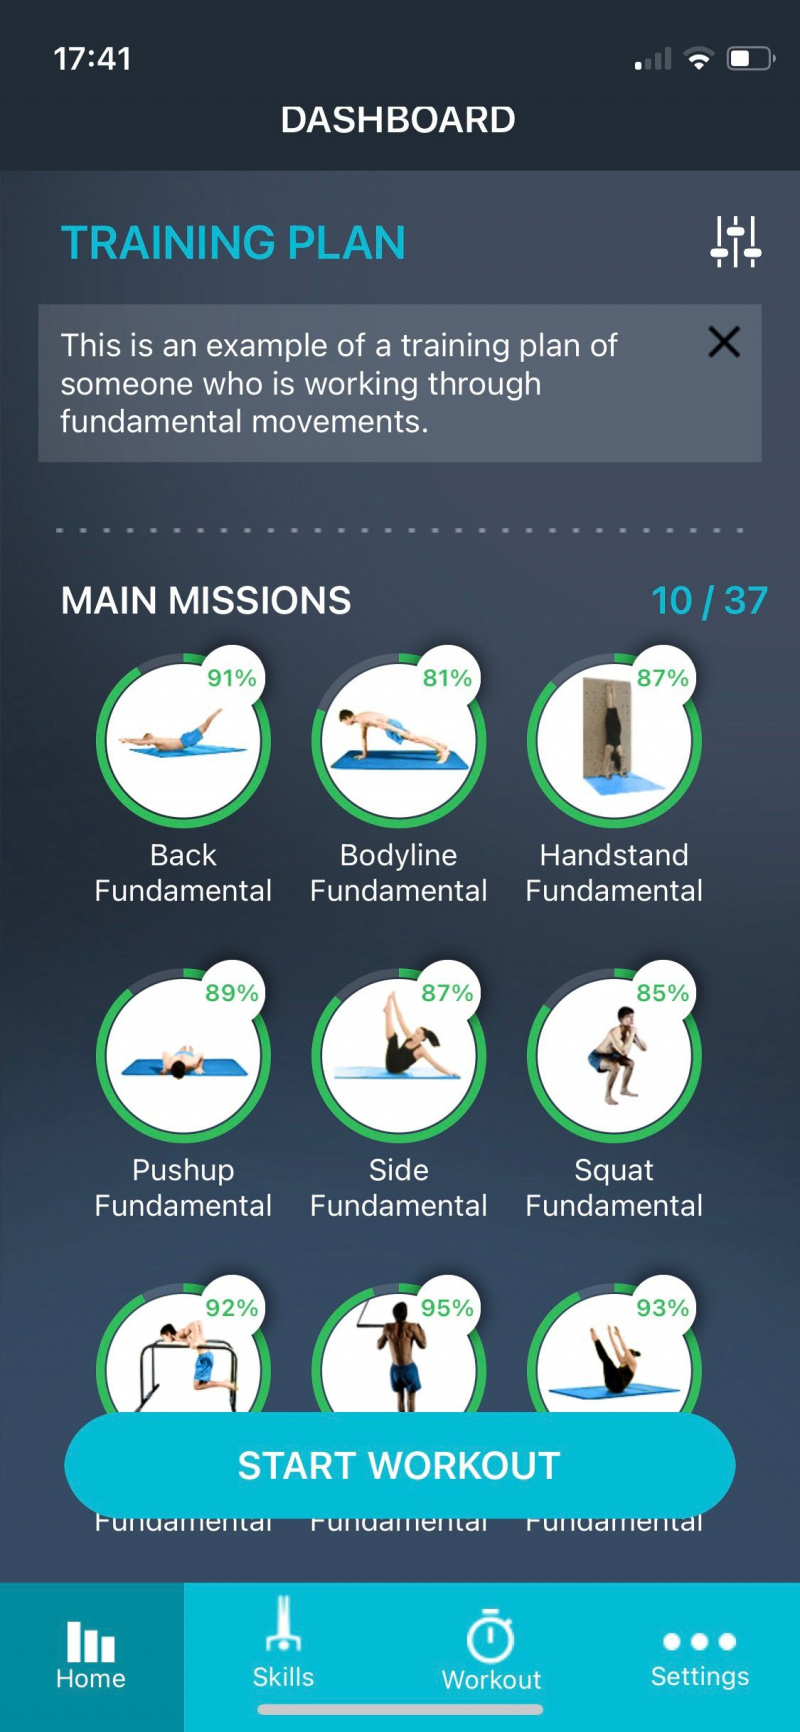   Zrzut ekranu przedstawiający zawodnika ruchu pokazujący plan treningowy